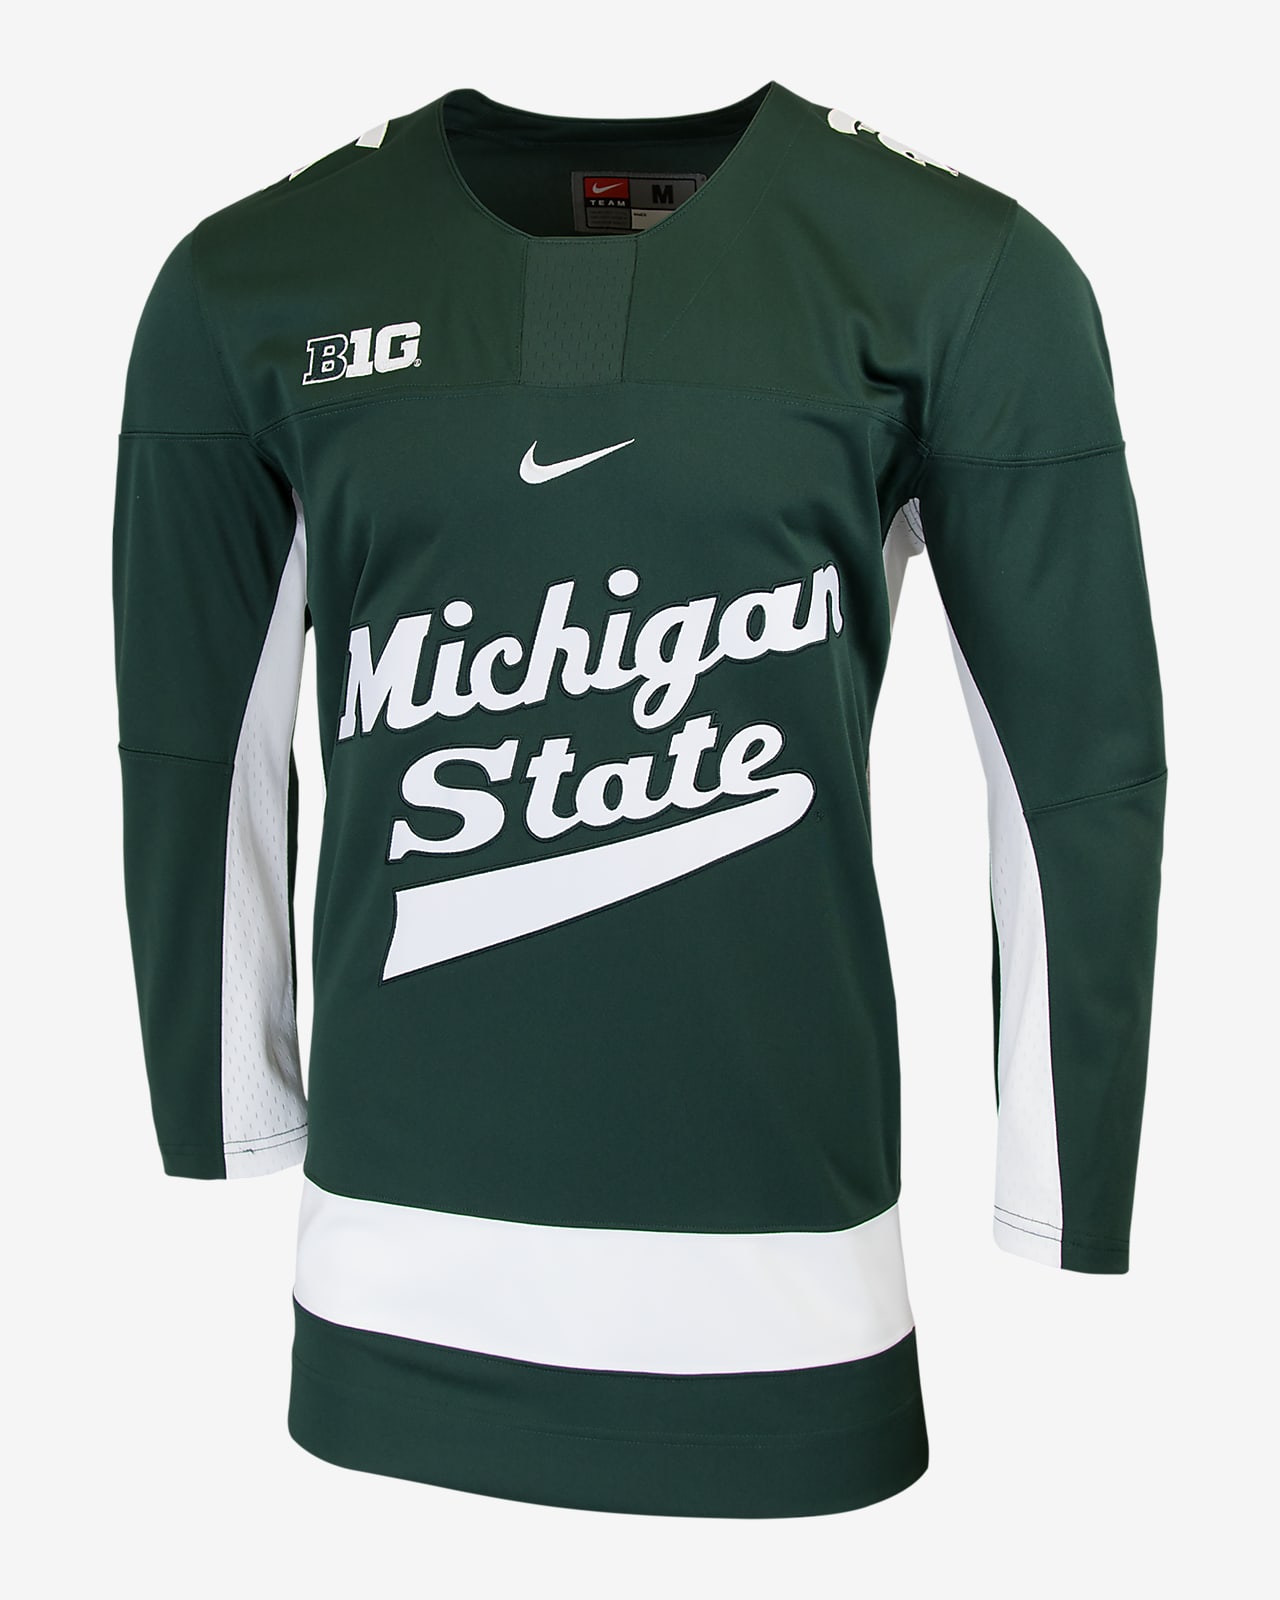 Camiseta de fútbol americano edición limitada para hombre Nike College (Michigan State)